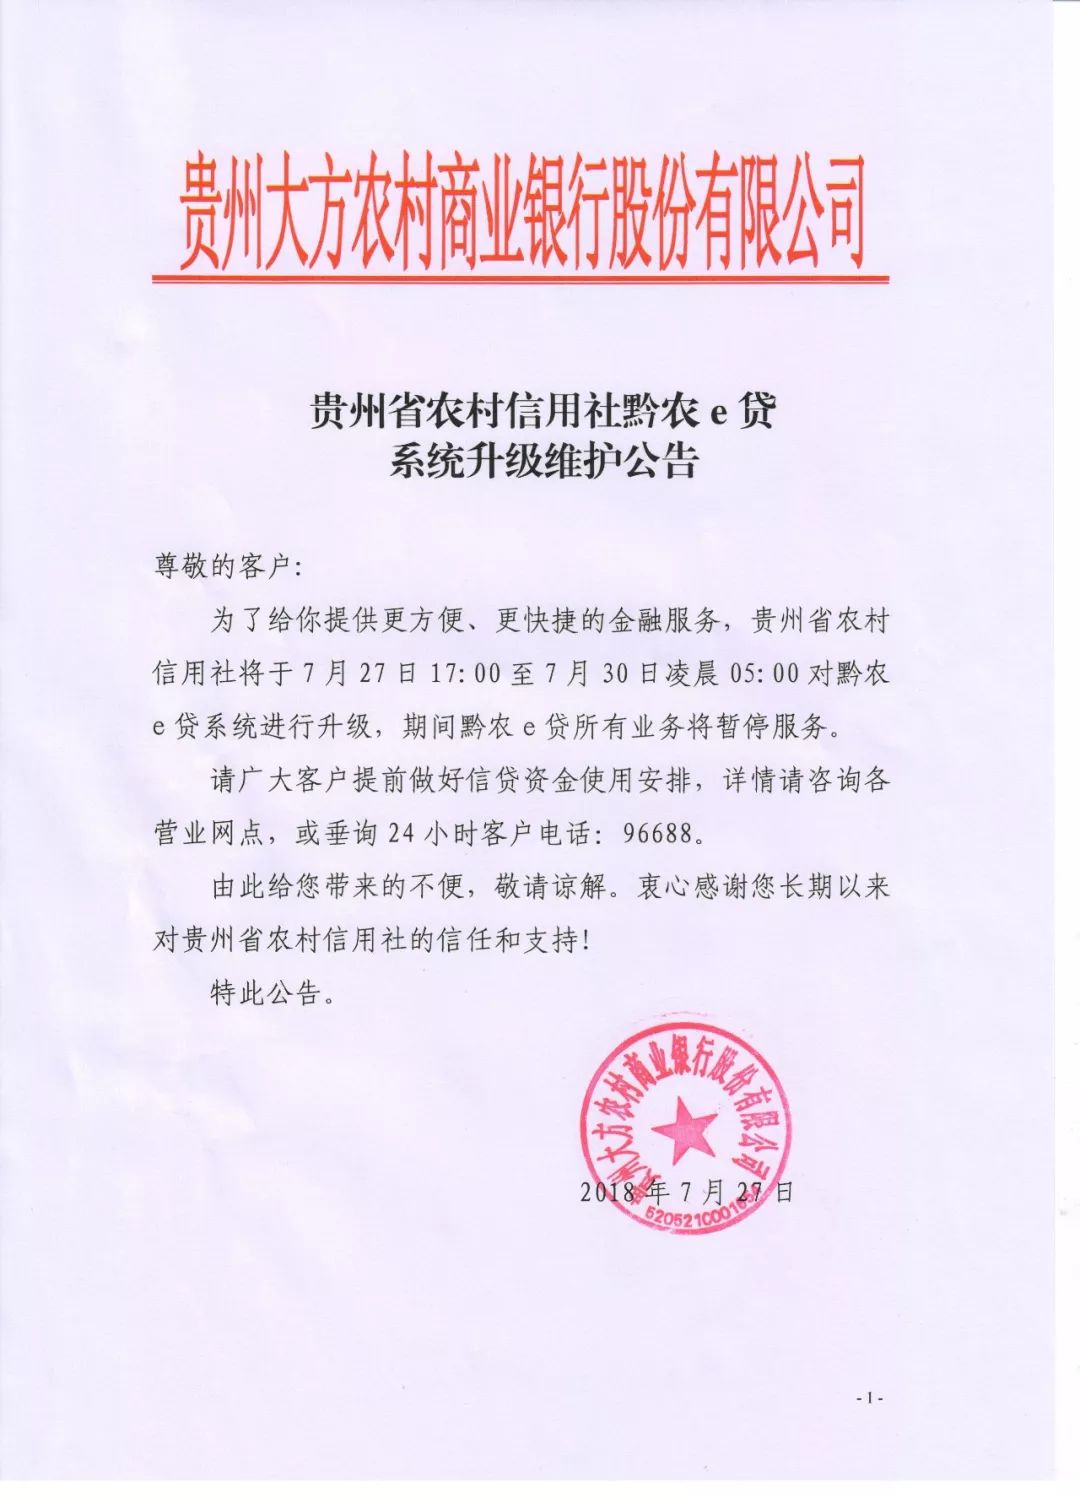 公告|贵州省农村信用社黔农e贷系统升级维护公